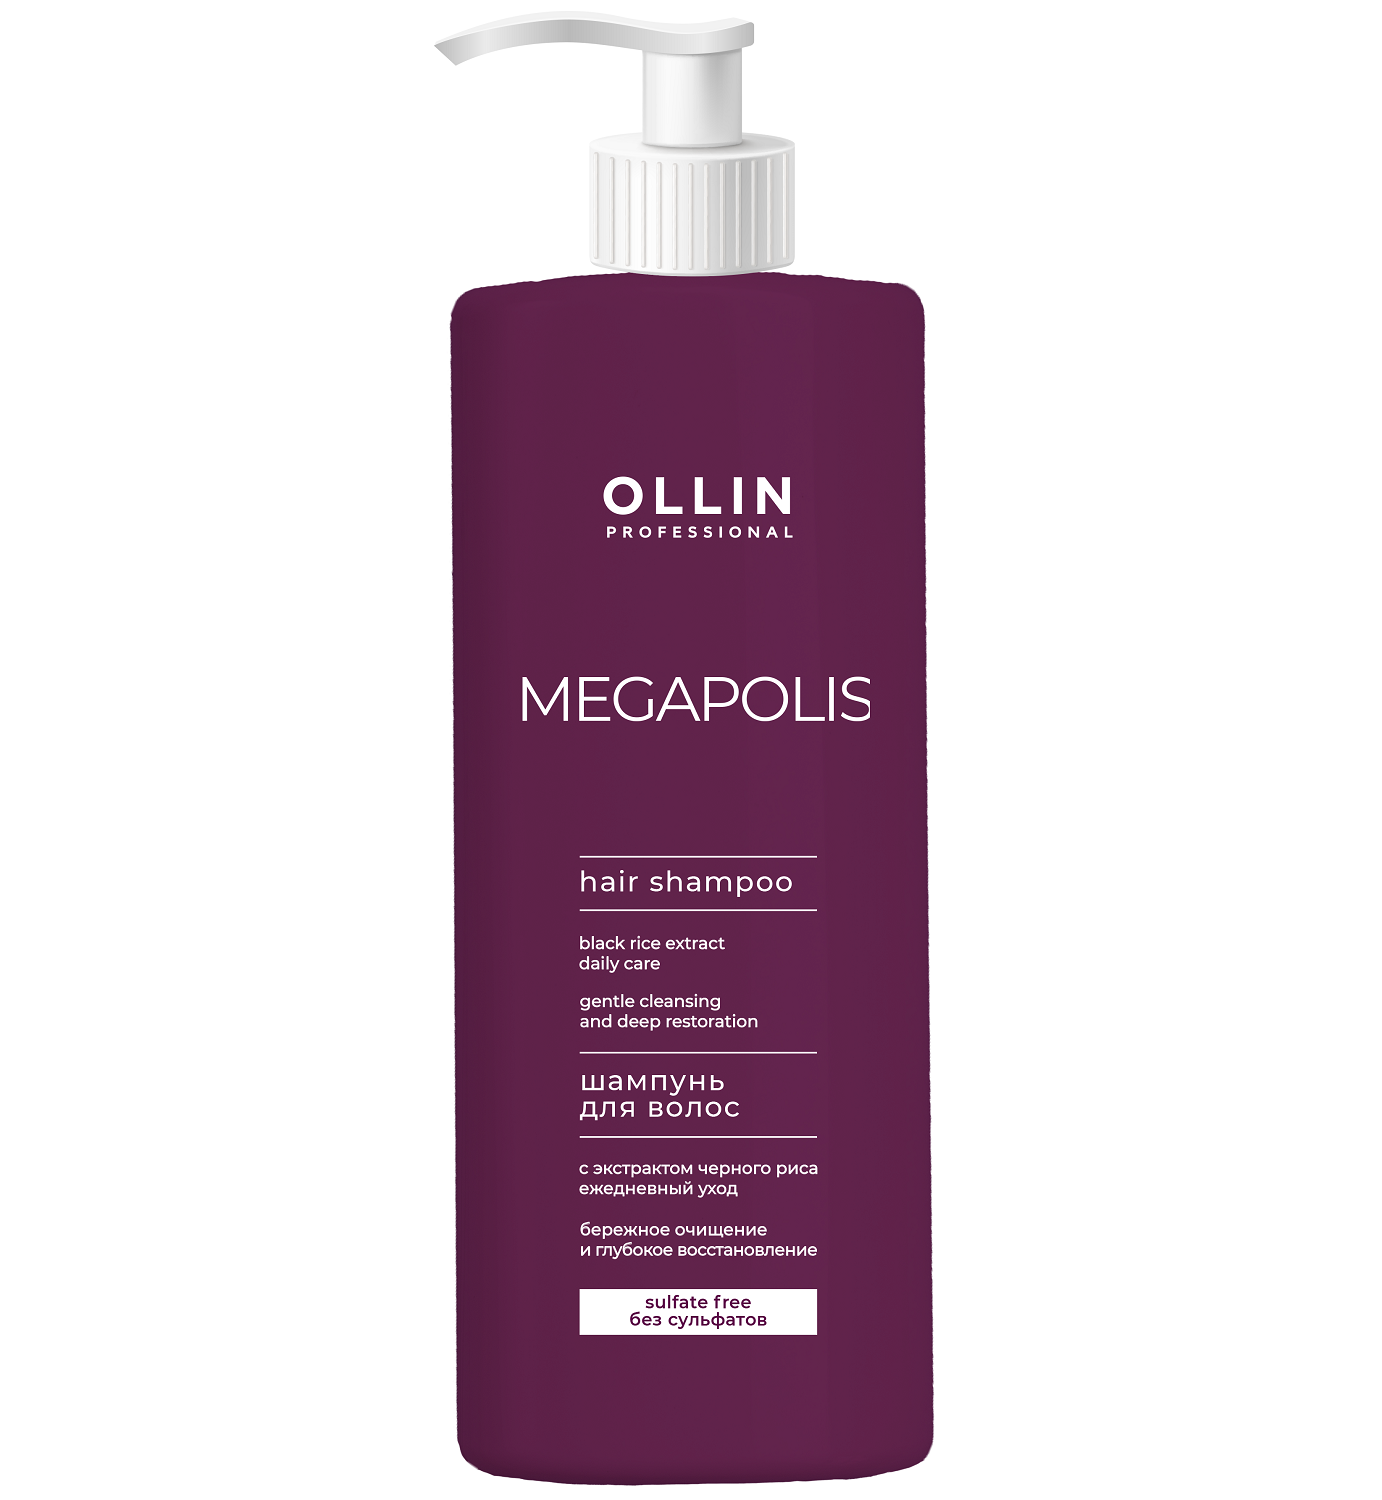 цена Ollin Professional Бессульфатный шампунь с экстрактом черного риса, 1000 мл (Ollin Professional, Megapolis)